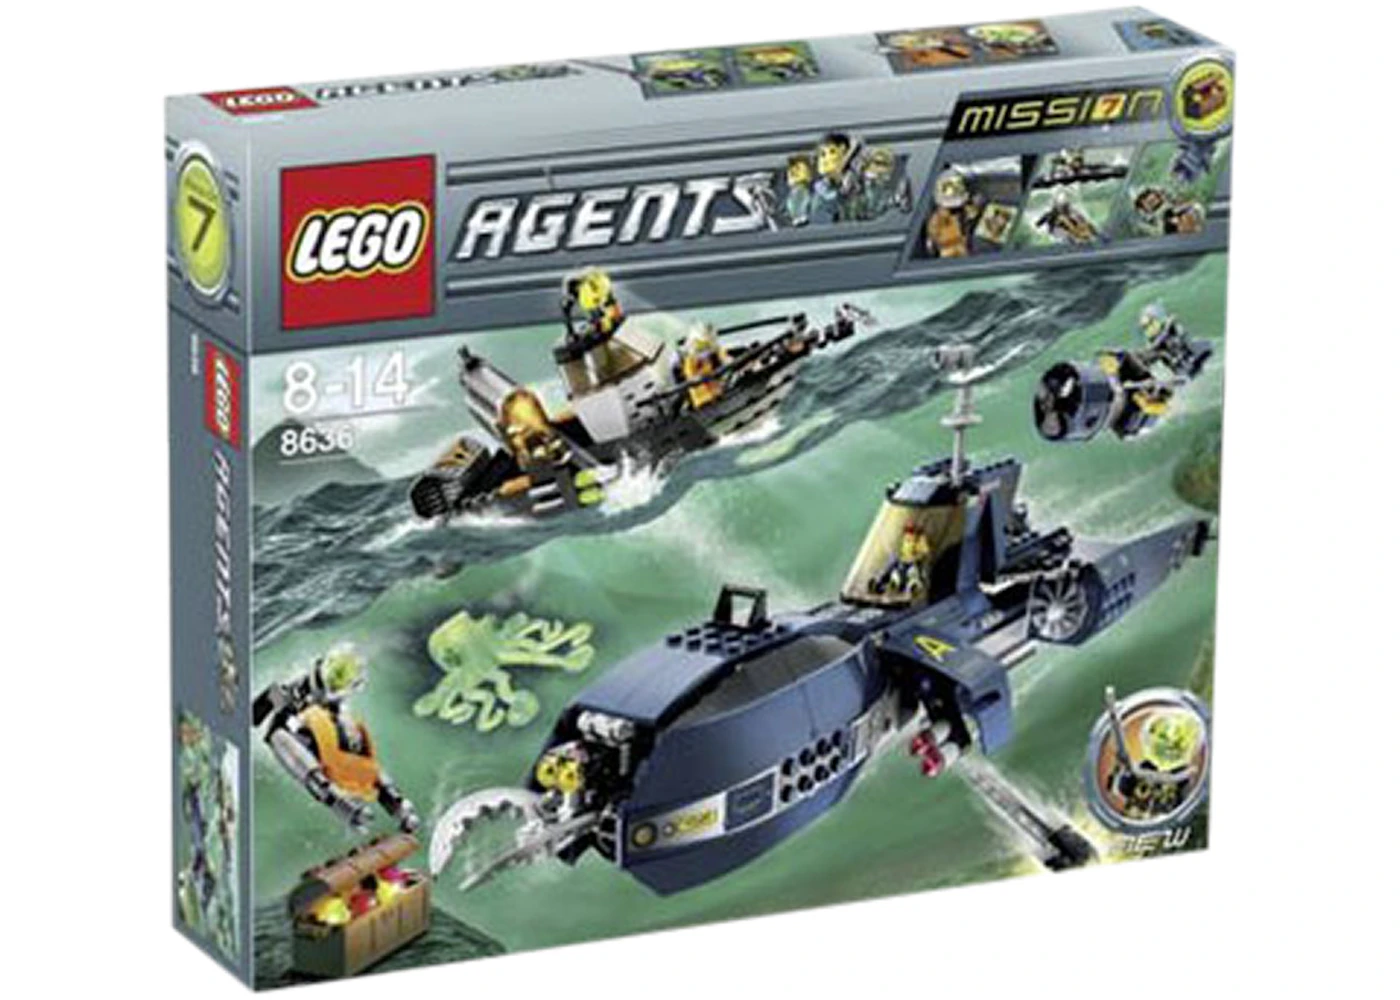 Email slange Villain LEGO Agents Deep Sea Quest Set 8636 - US